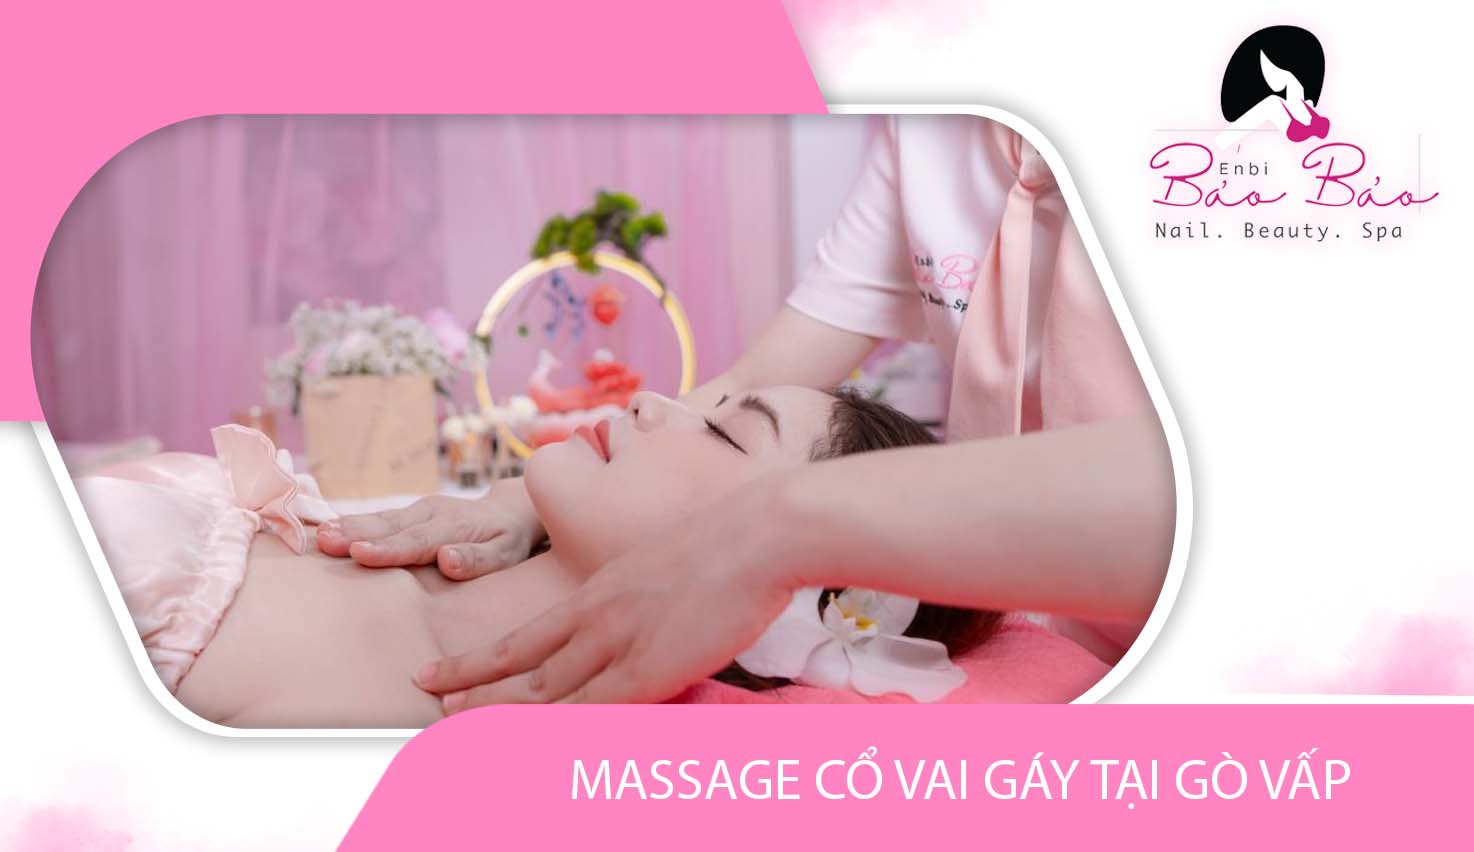 Dịch vụ massage cổ vai gáy tại Gò Vấp giúp trị liệu tốt nhất